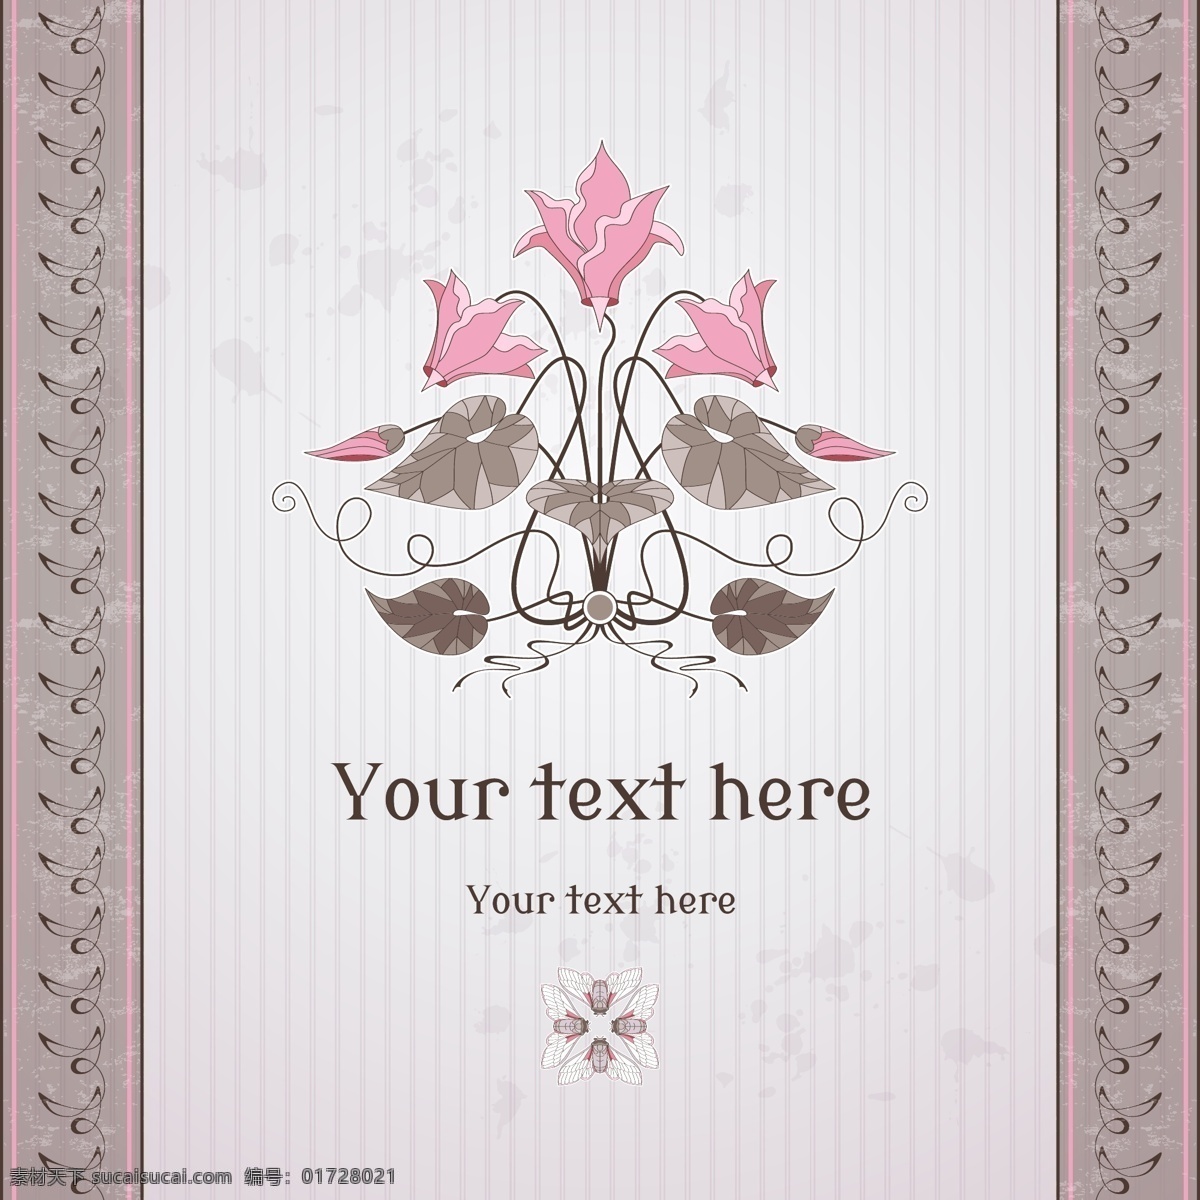 条纹 介绍 卡片 粉 灰色 花纹 vi 矢量 复古 粉色 花朵 欧式 创意 简约 贺卡 邀请函